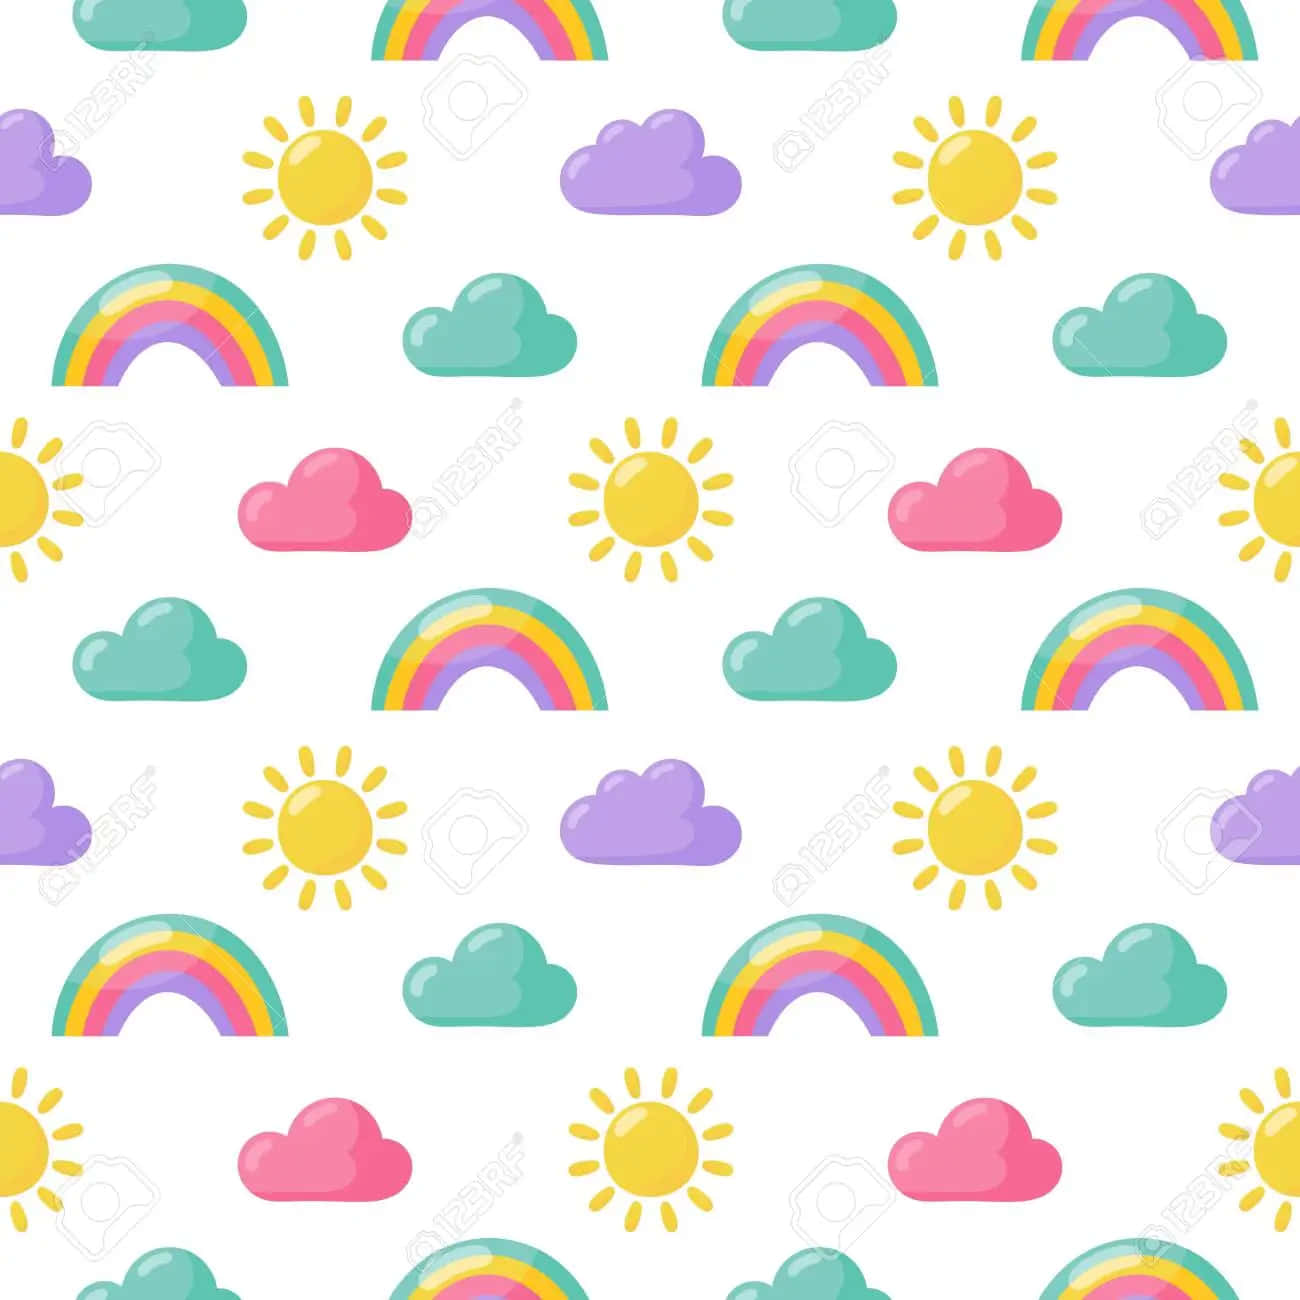 Einbezaubernder Regenbogen In Sanften Pastellfarben Wallpaper